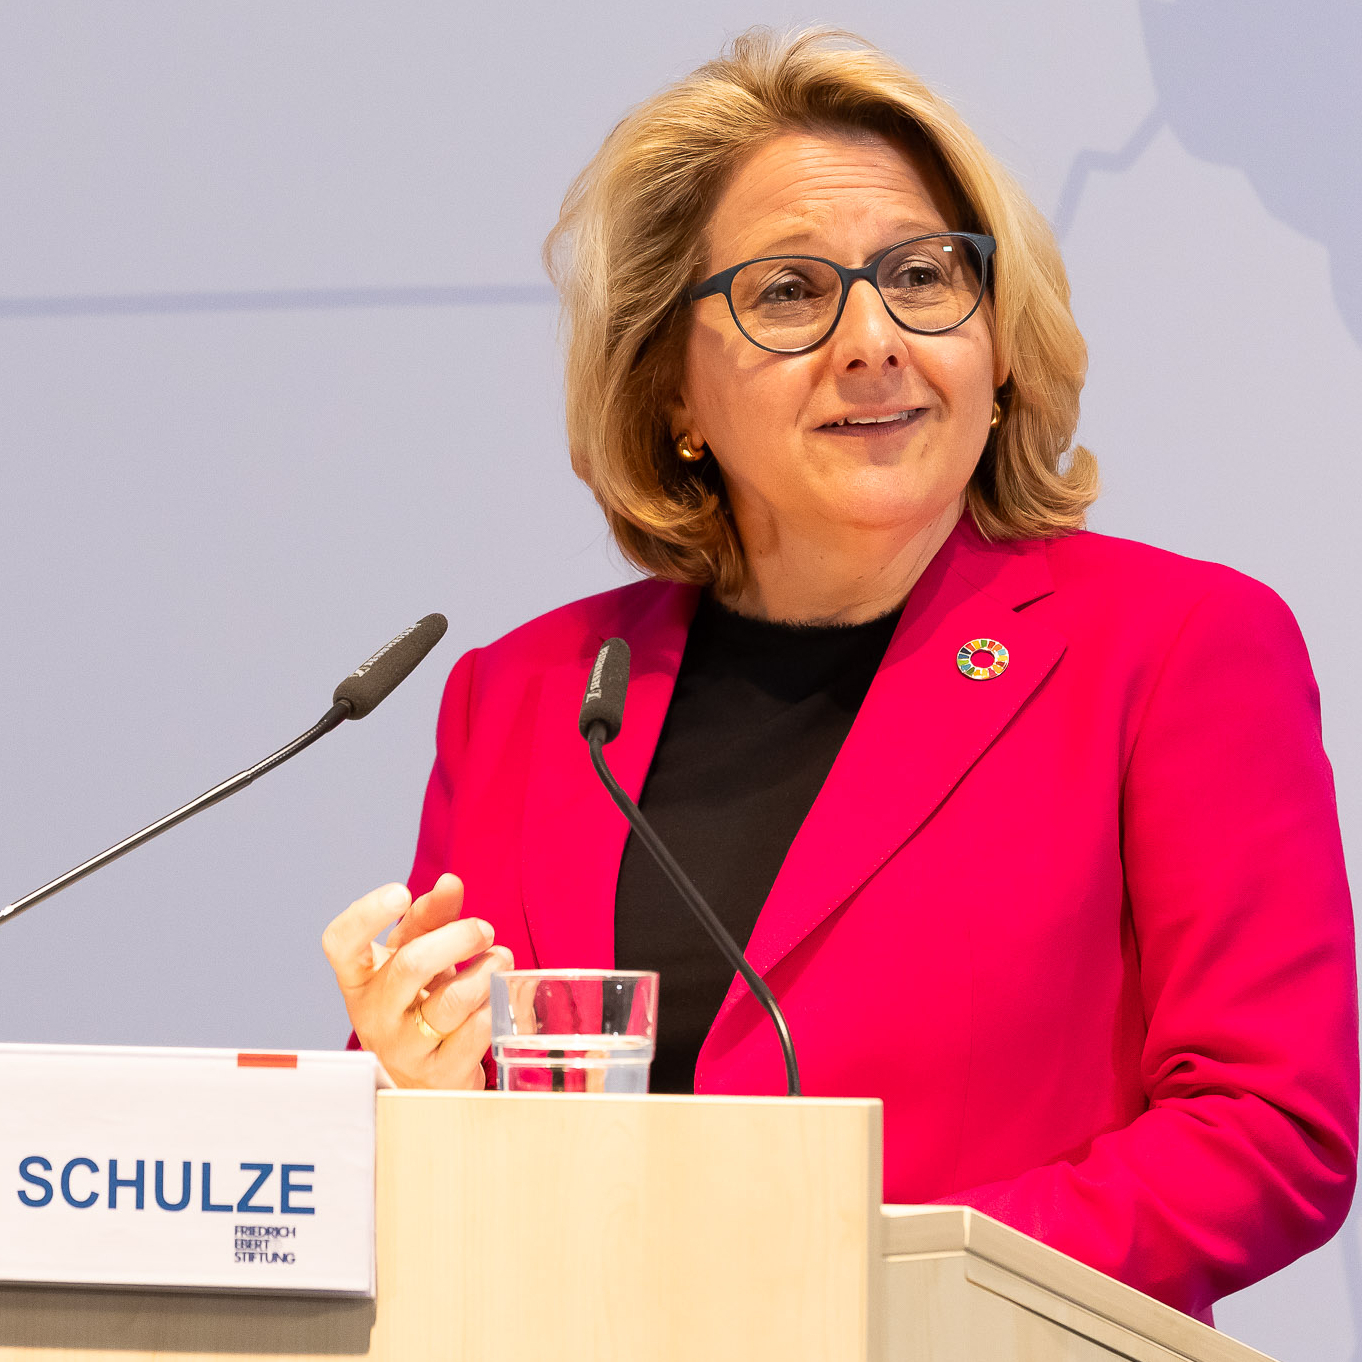  Bundesentwicklungsministerin Svenja Schulze, spricht am Rednerpult. Sie lächelt.